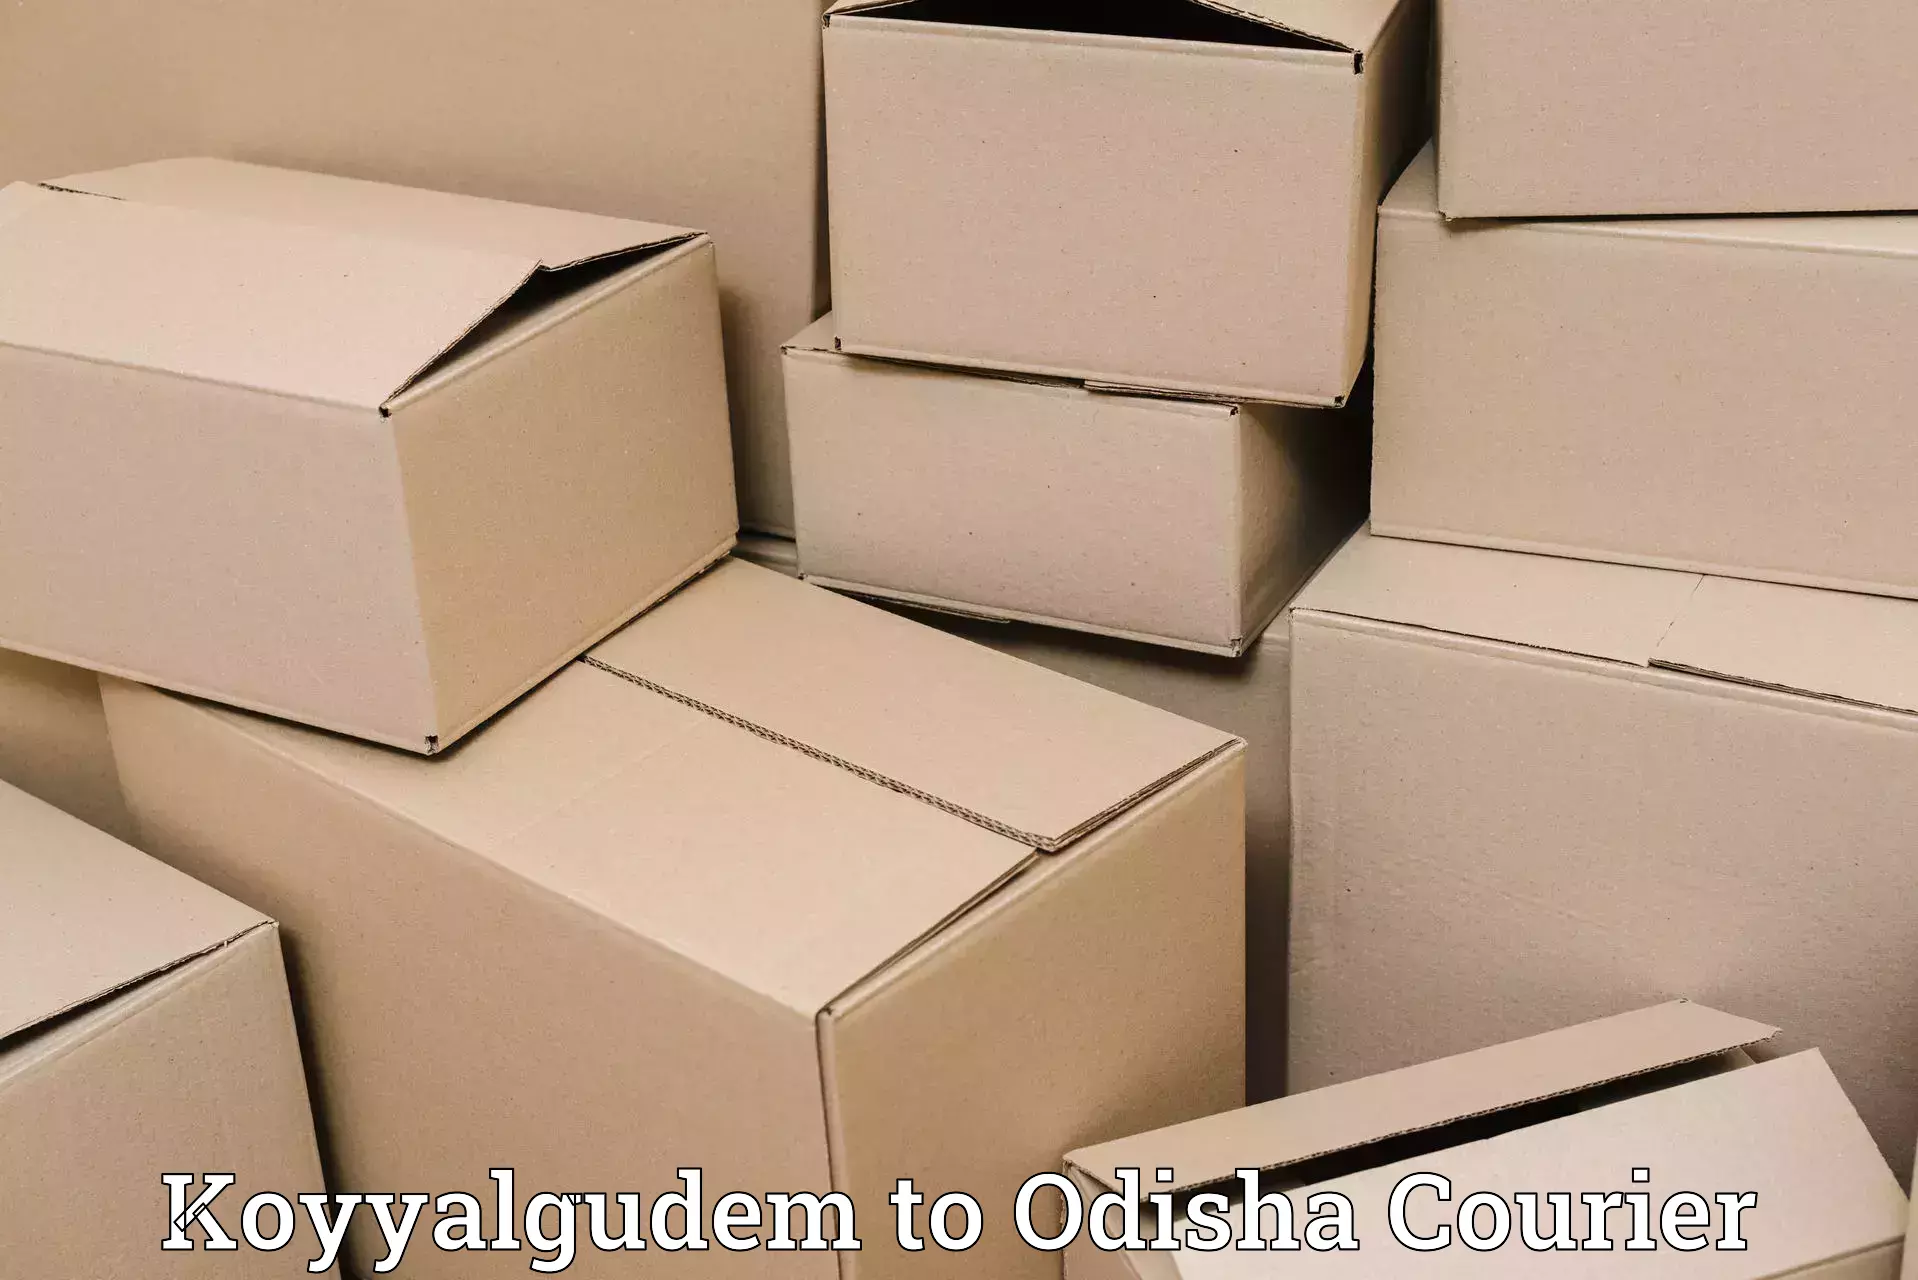 Nationwide courier service Koyyalgudem to Bhutasarasingi